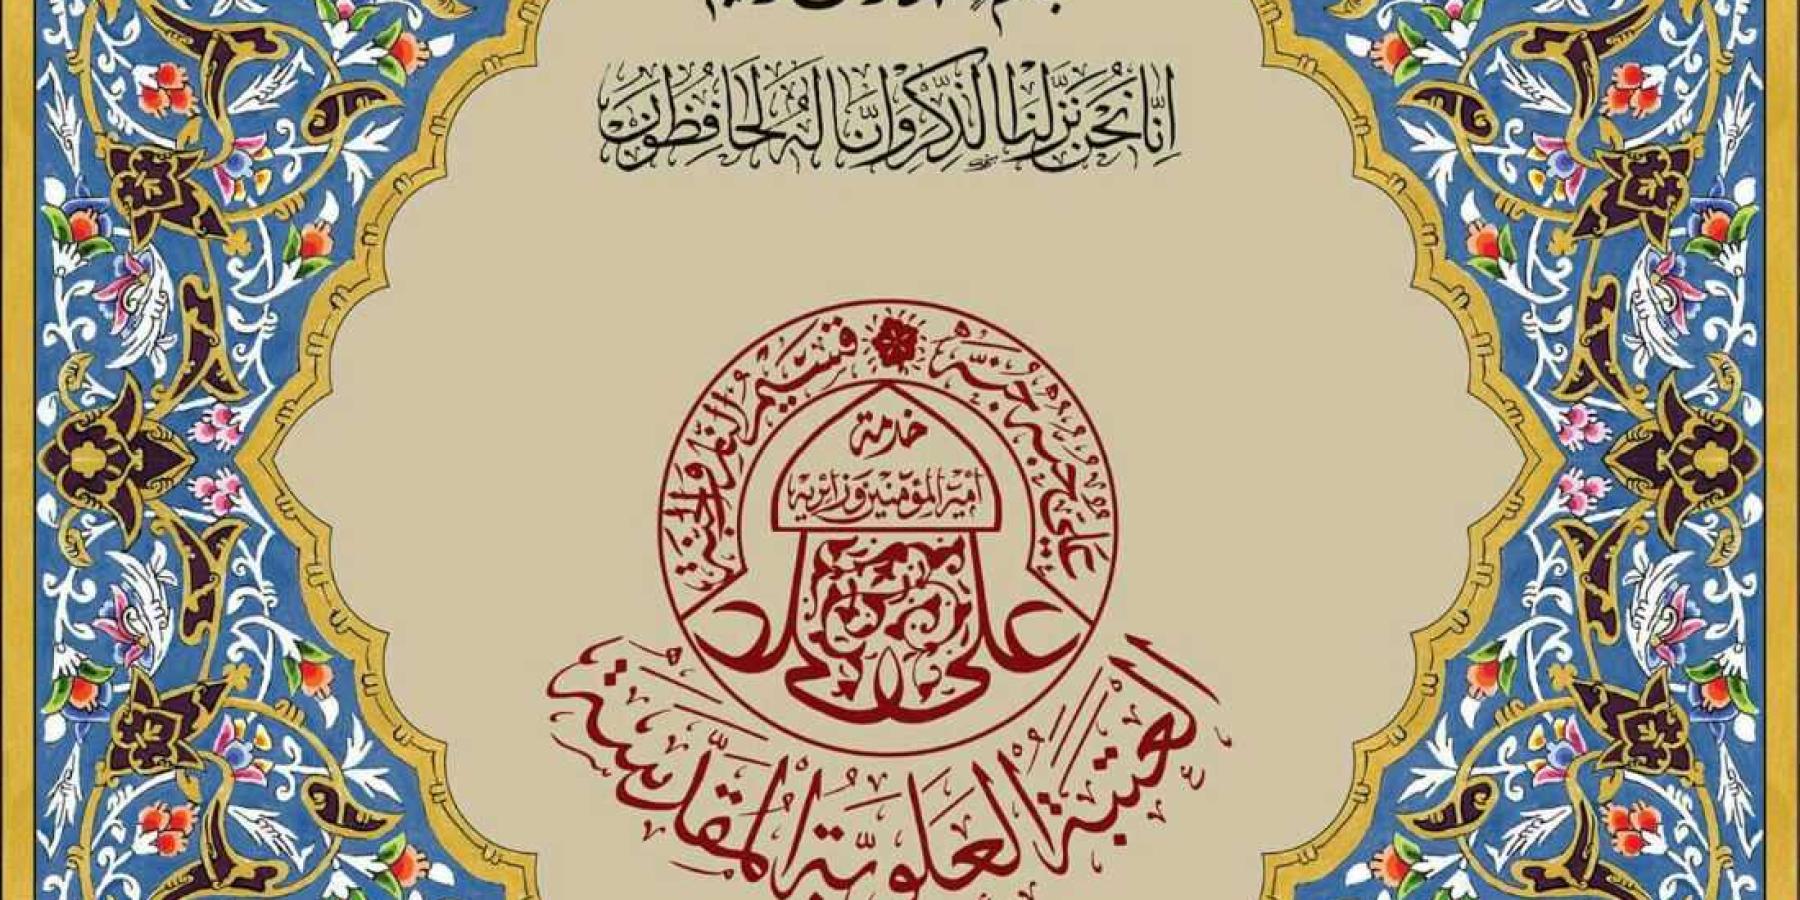 قسم الشؤون الدينية في العتبة العلوية المقدسة ينجز مشروع طباعة نسخة من القرآن الكريم بلغة الأوردو